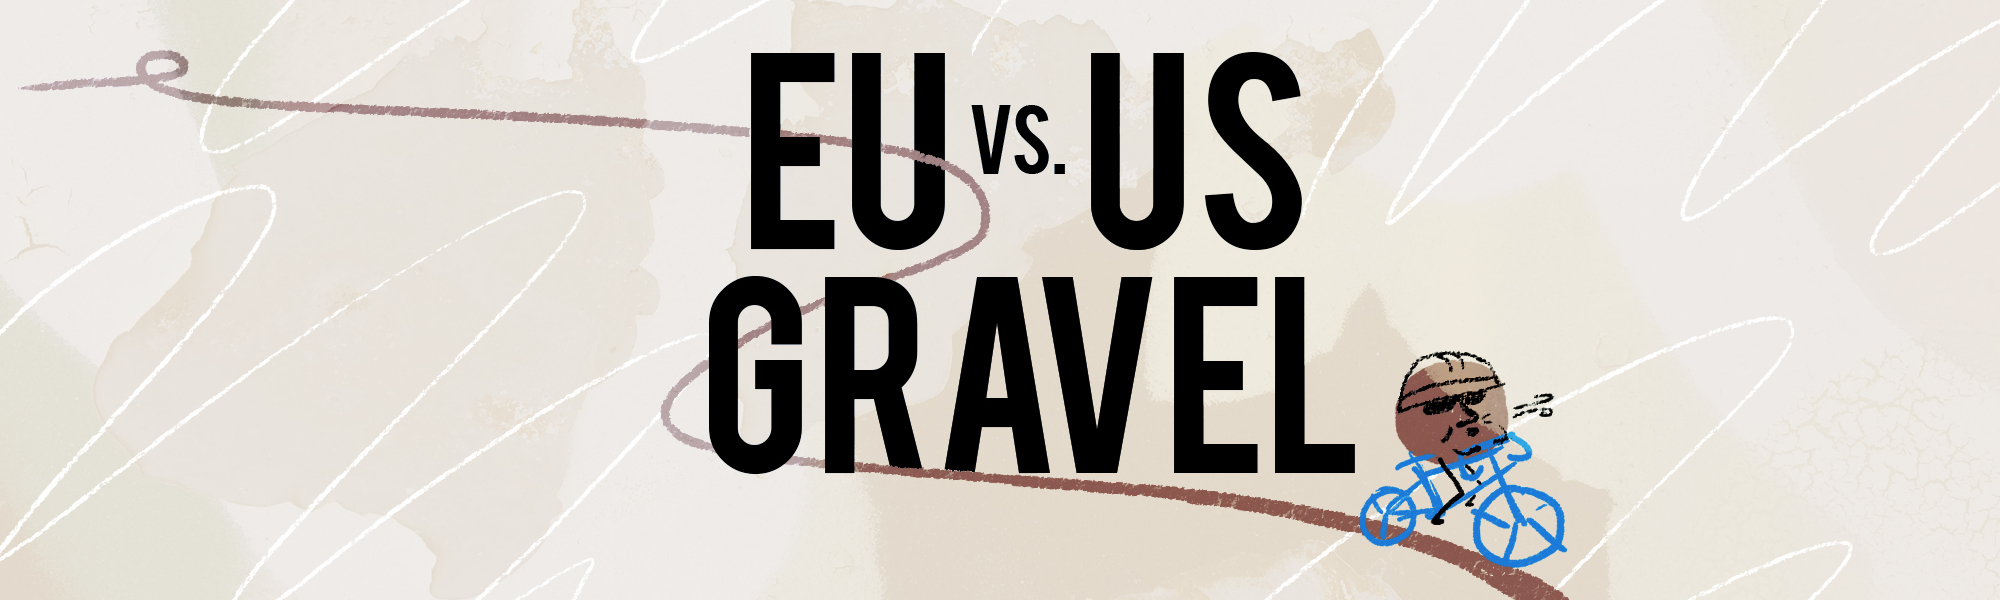 Gravel EU vs. Gravel USA